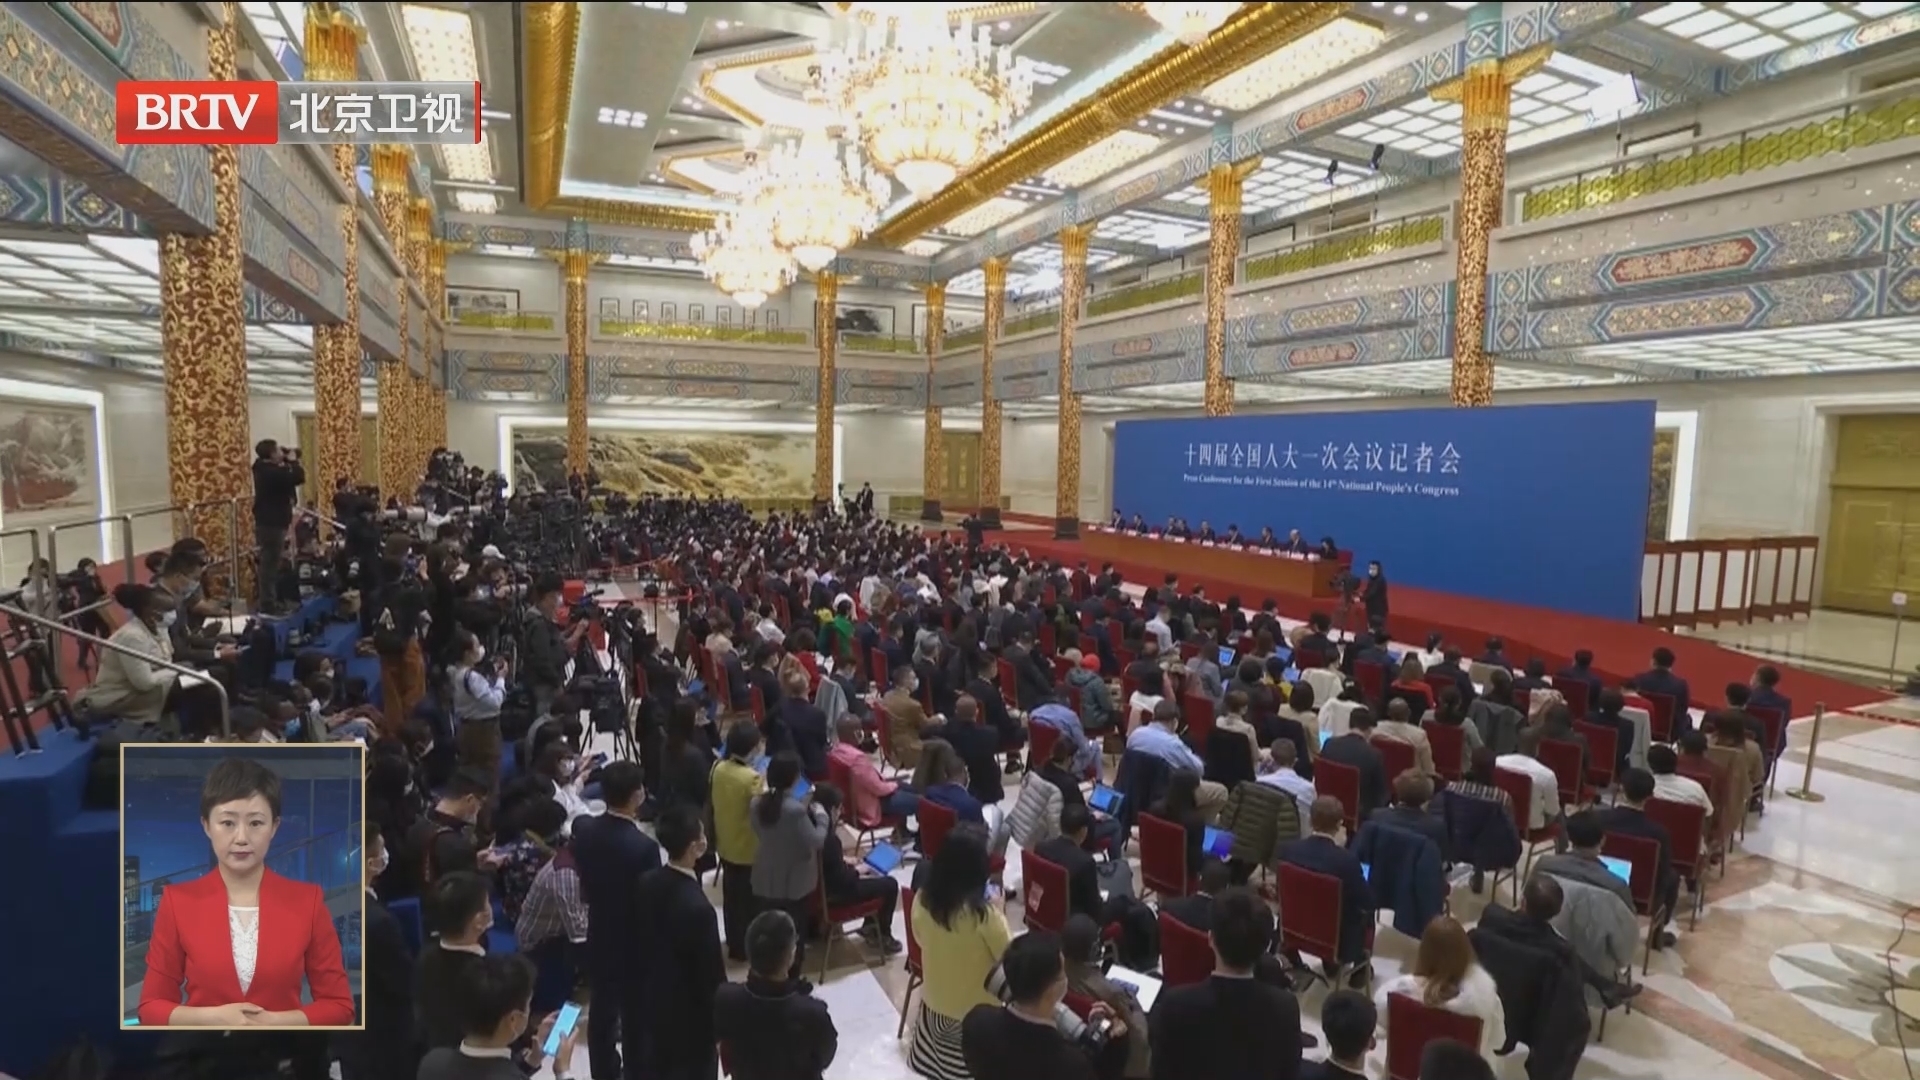 国务院总理李强出席记者会并回答中外记者提问